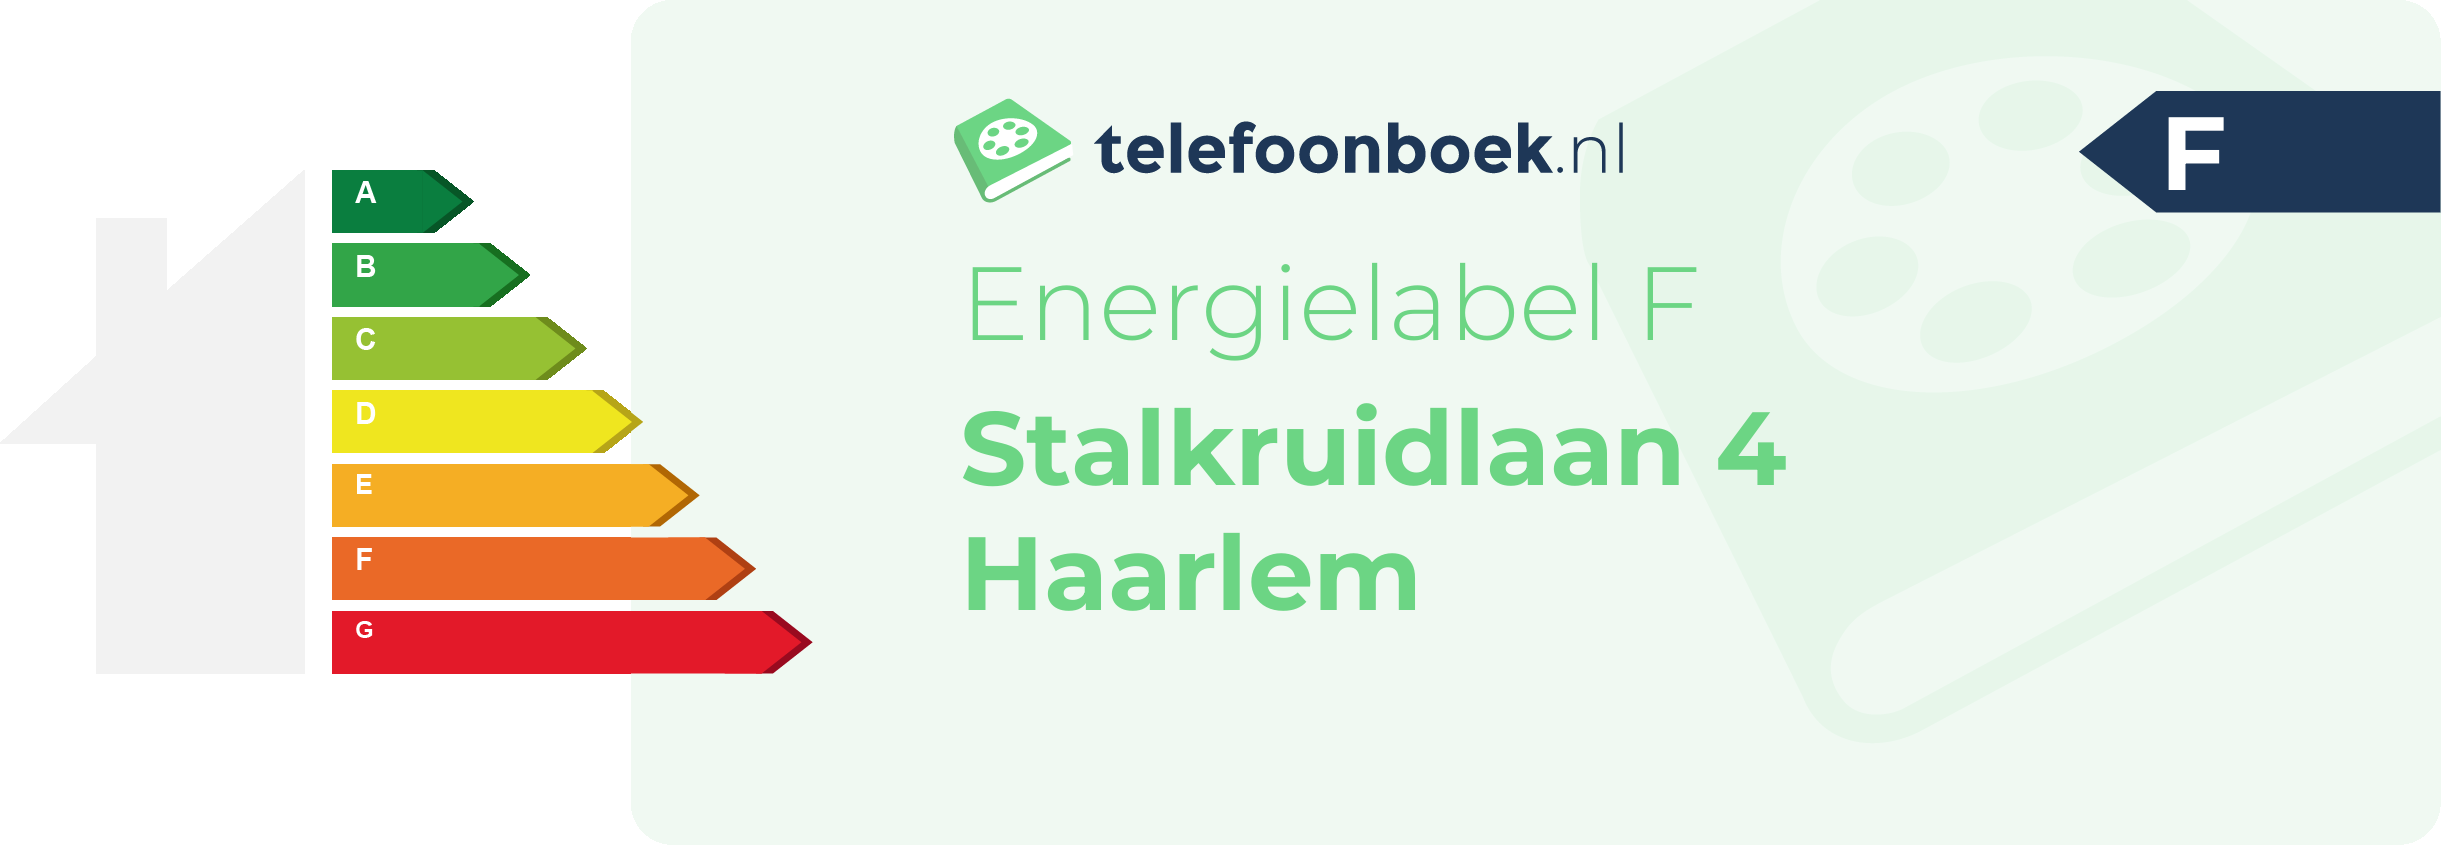 Energielabel Stalkruidlaan 4 Haarlem